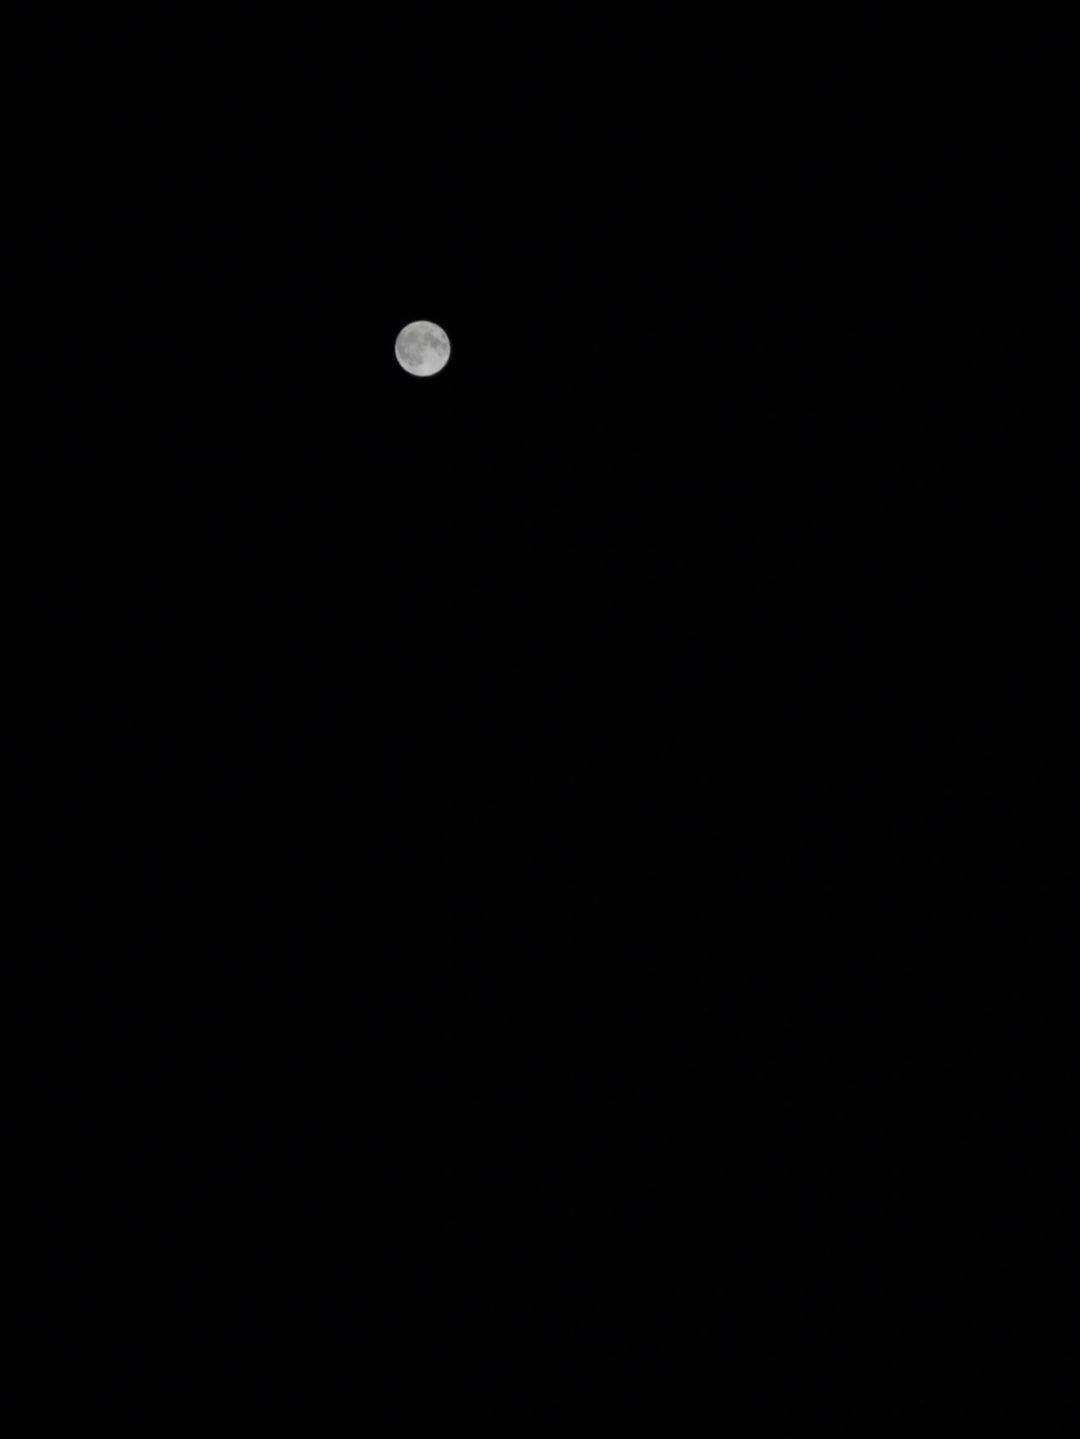 华为p50拍出来的月亮图片